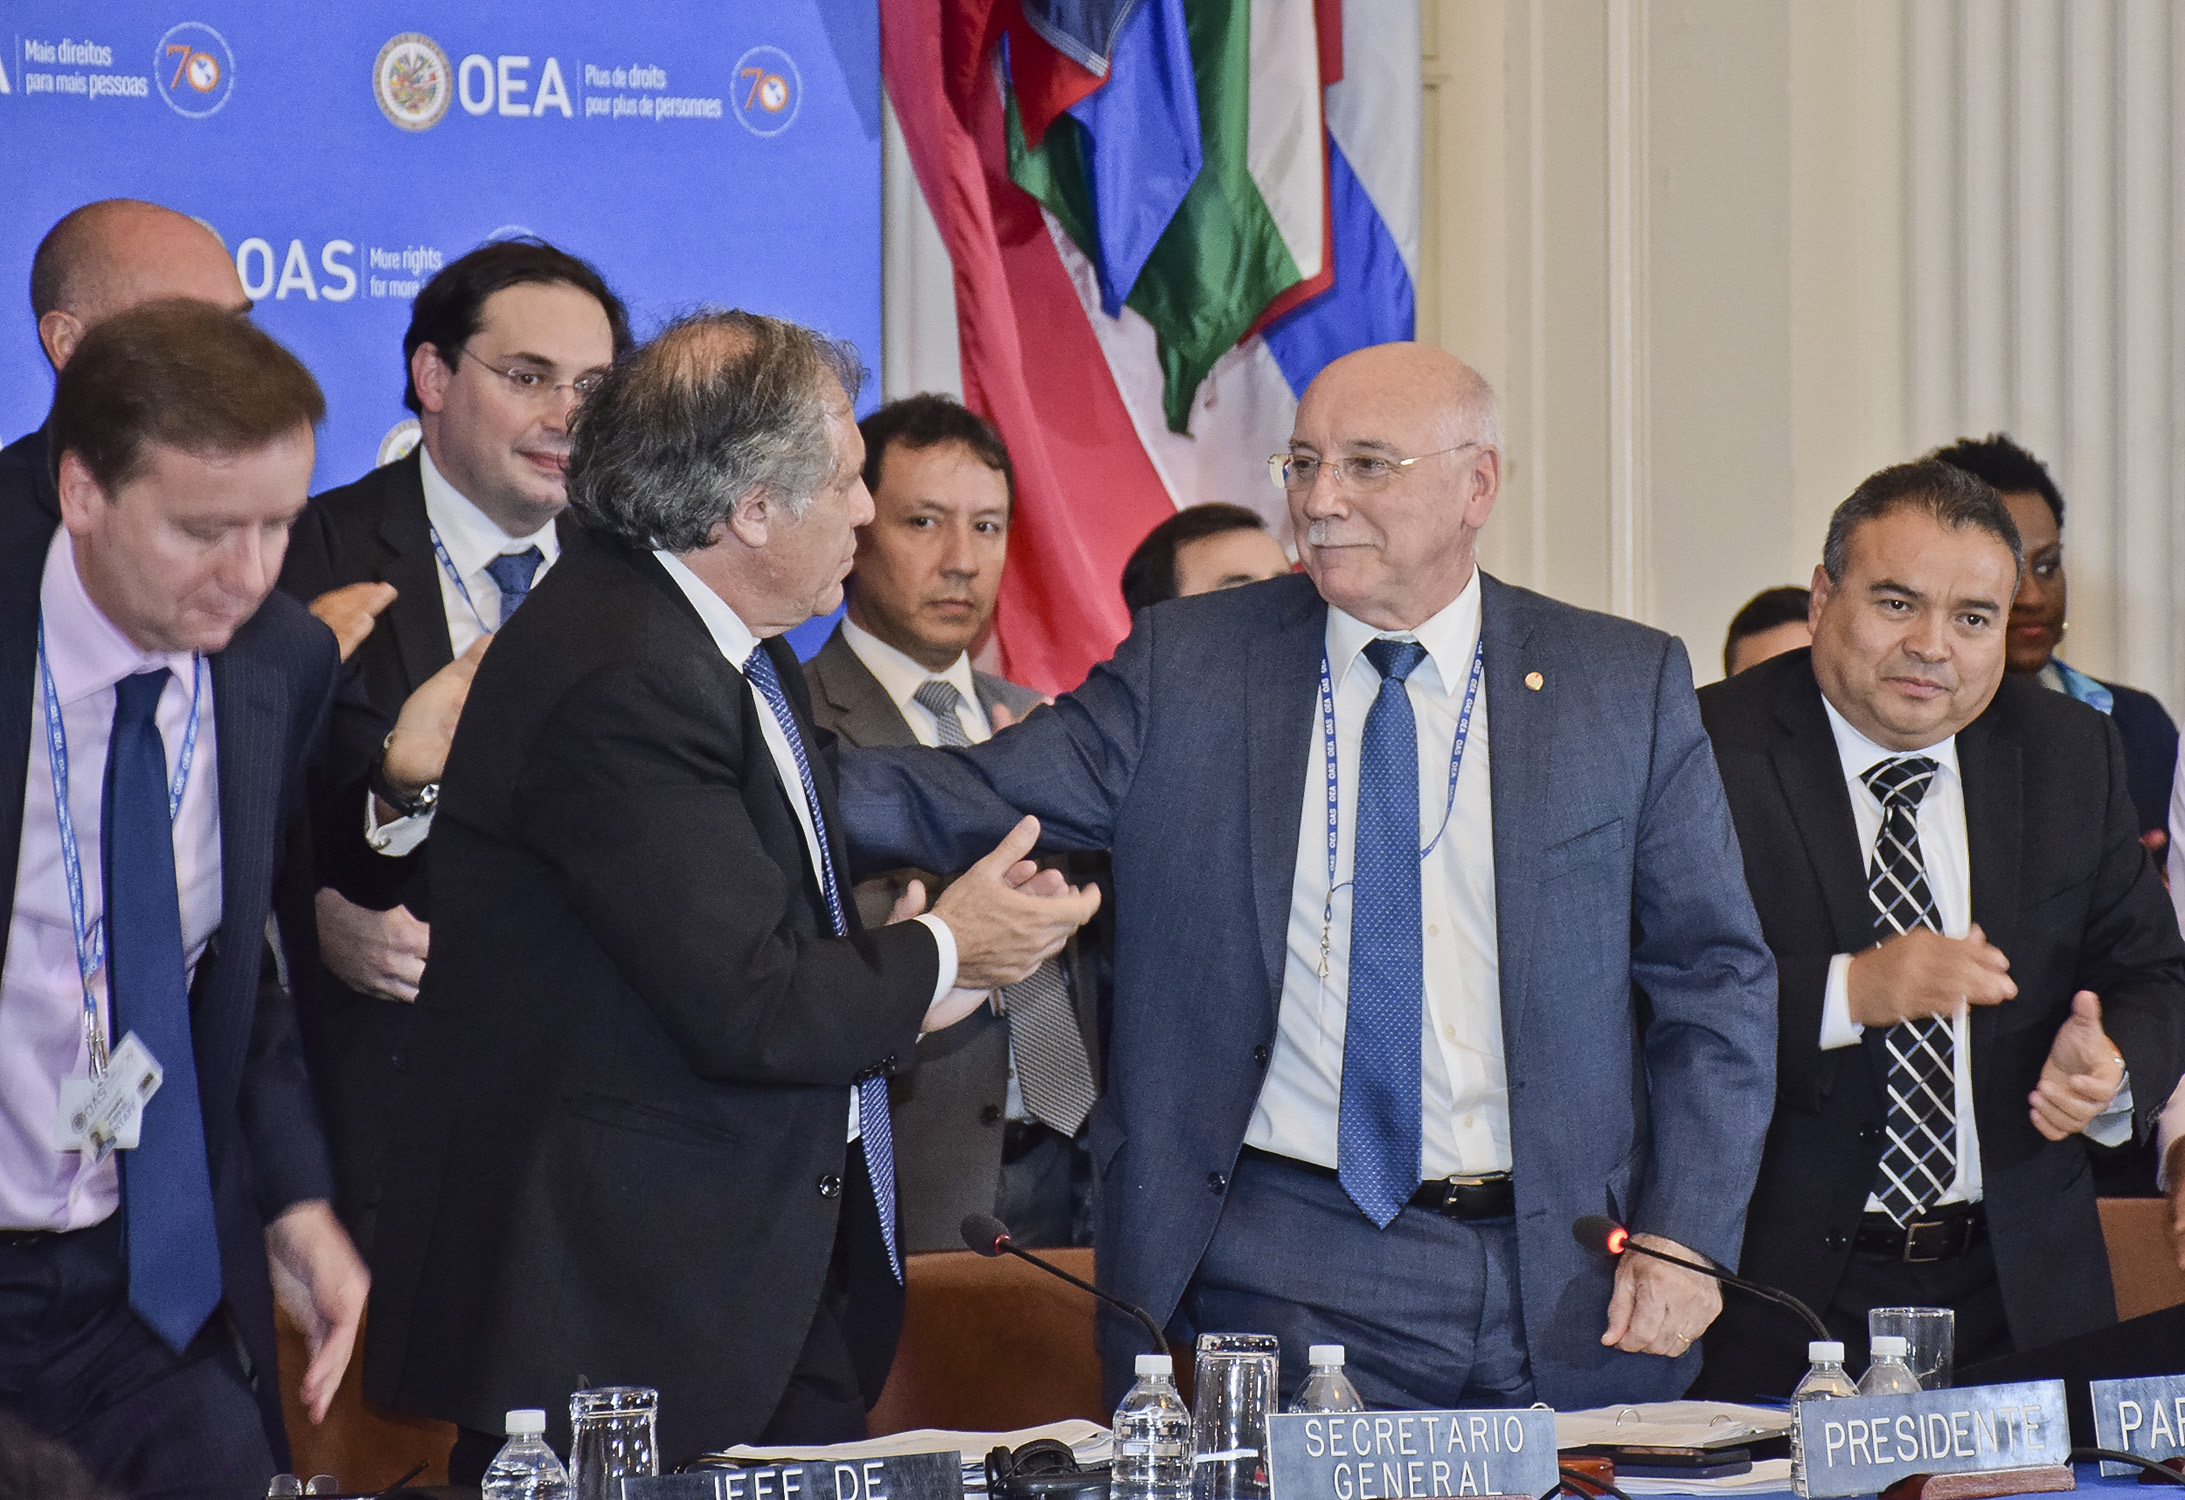 Bajo la conducción del Canciller Loizaga como Presidente concluyó la 48° Asamblea General de la OEA con la aprobación de importantes documentos